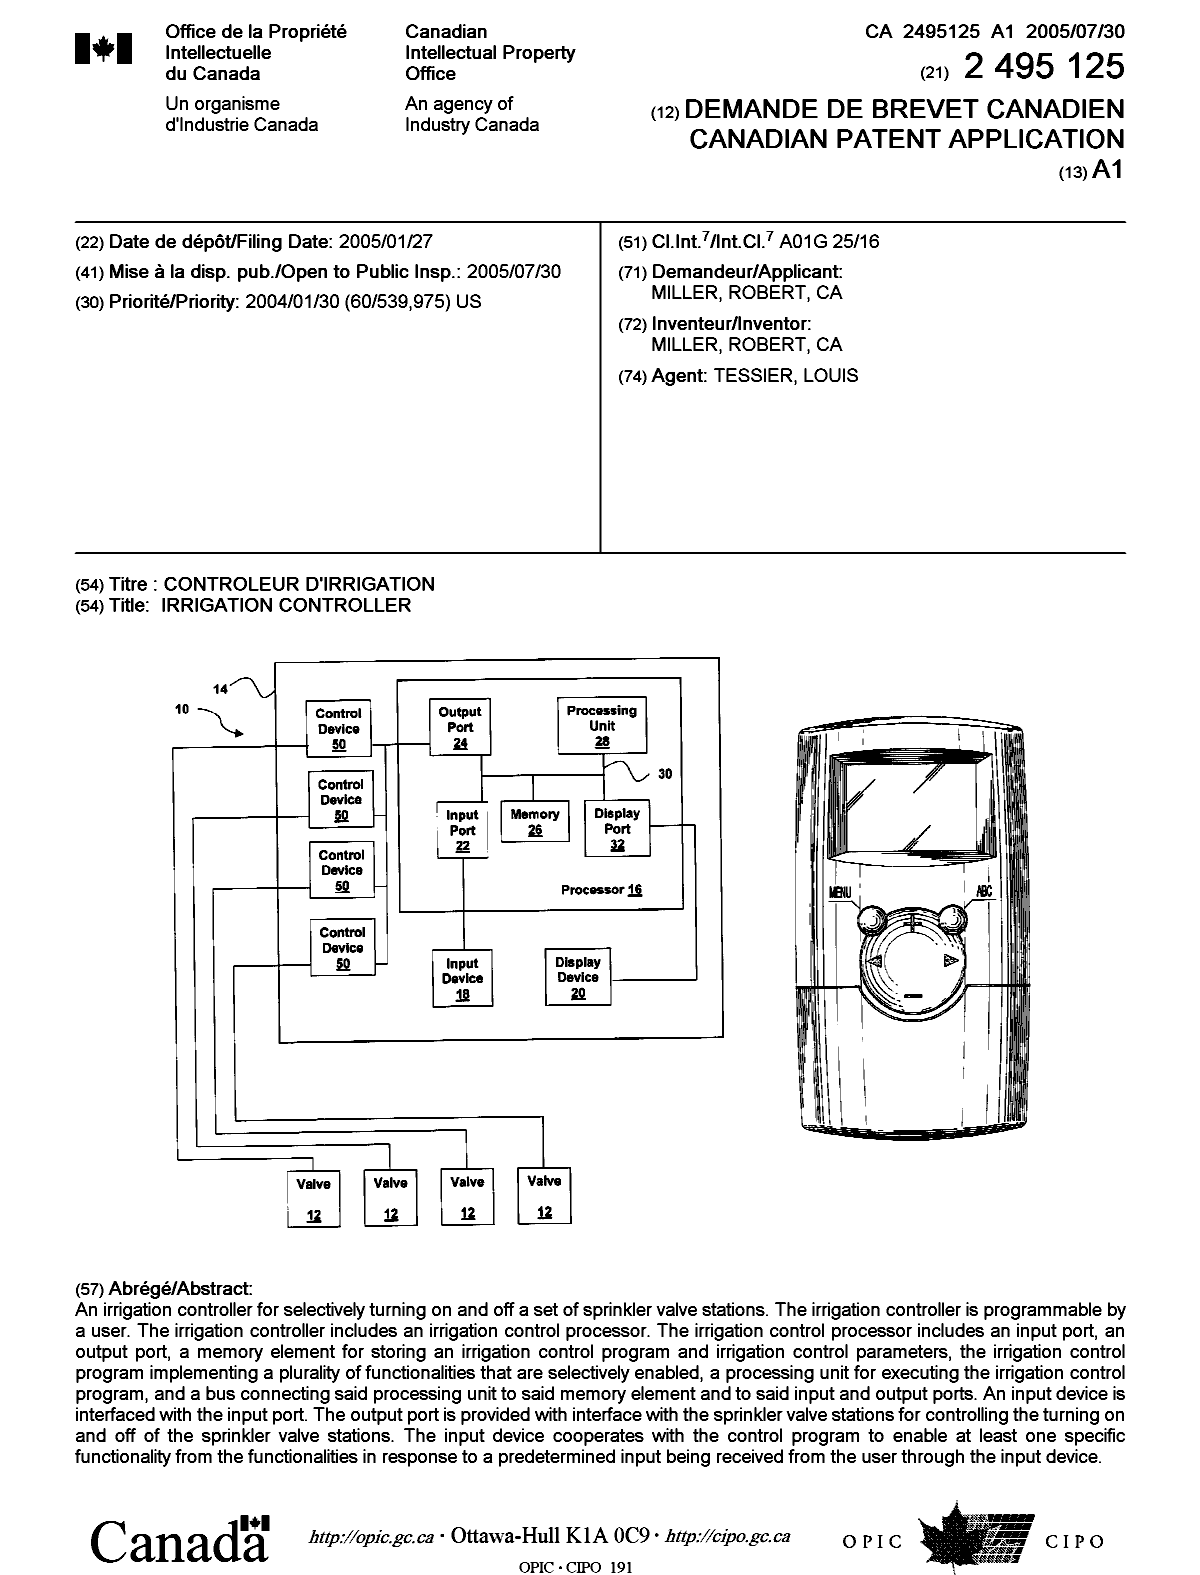 Document de brevet canadien 2495125. Page couverture 20050721. Image 1 de 1